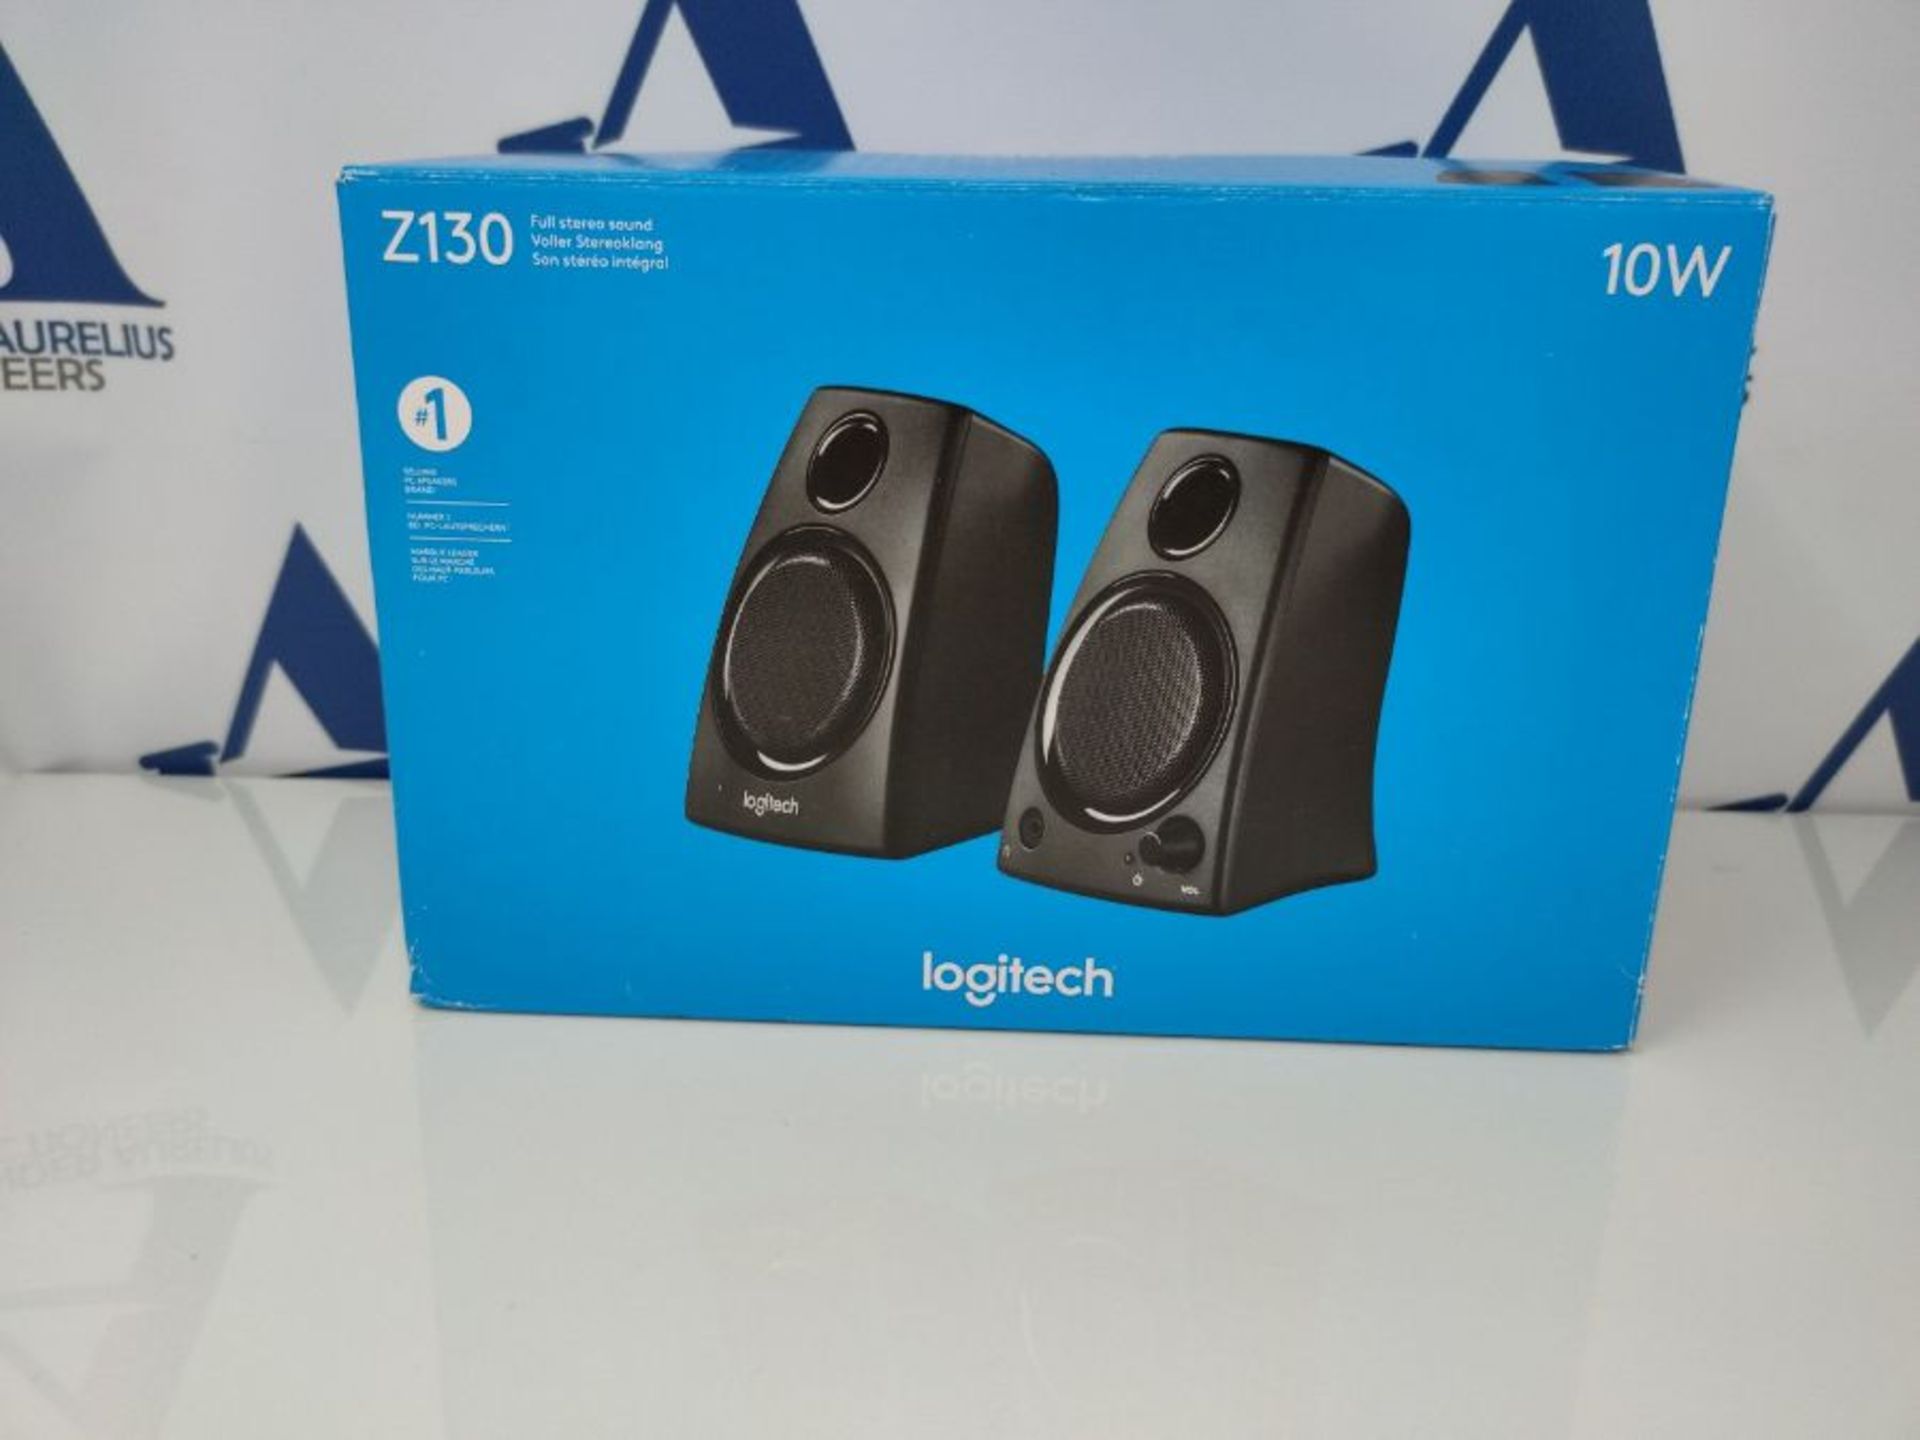 Logitech Z130 PC-Lautsprecher, Stereo Sound, 2 Lautsprecher, 10 Watt Spitzenleistung, - Image 2 of 3